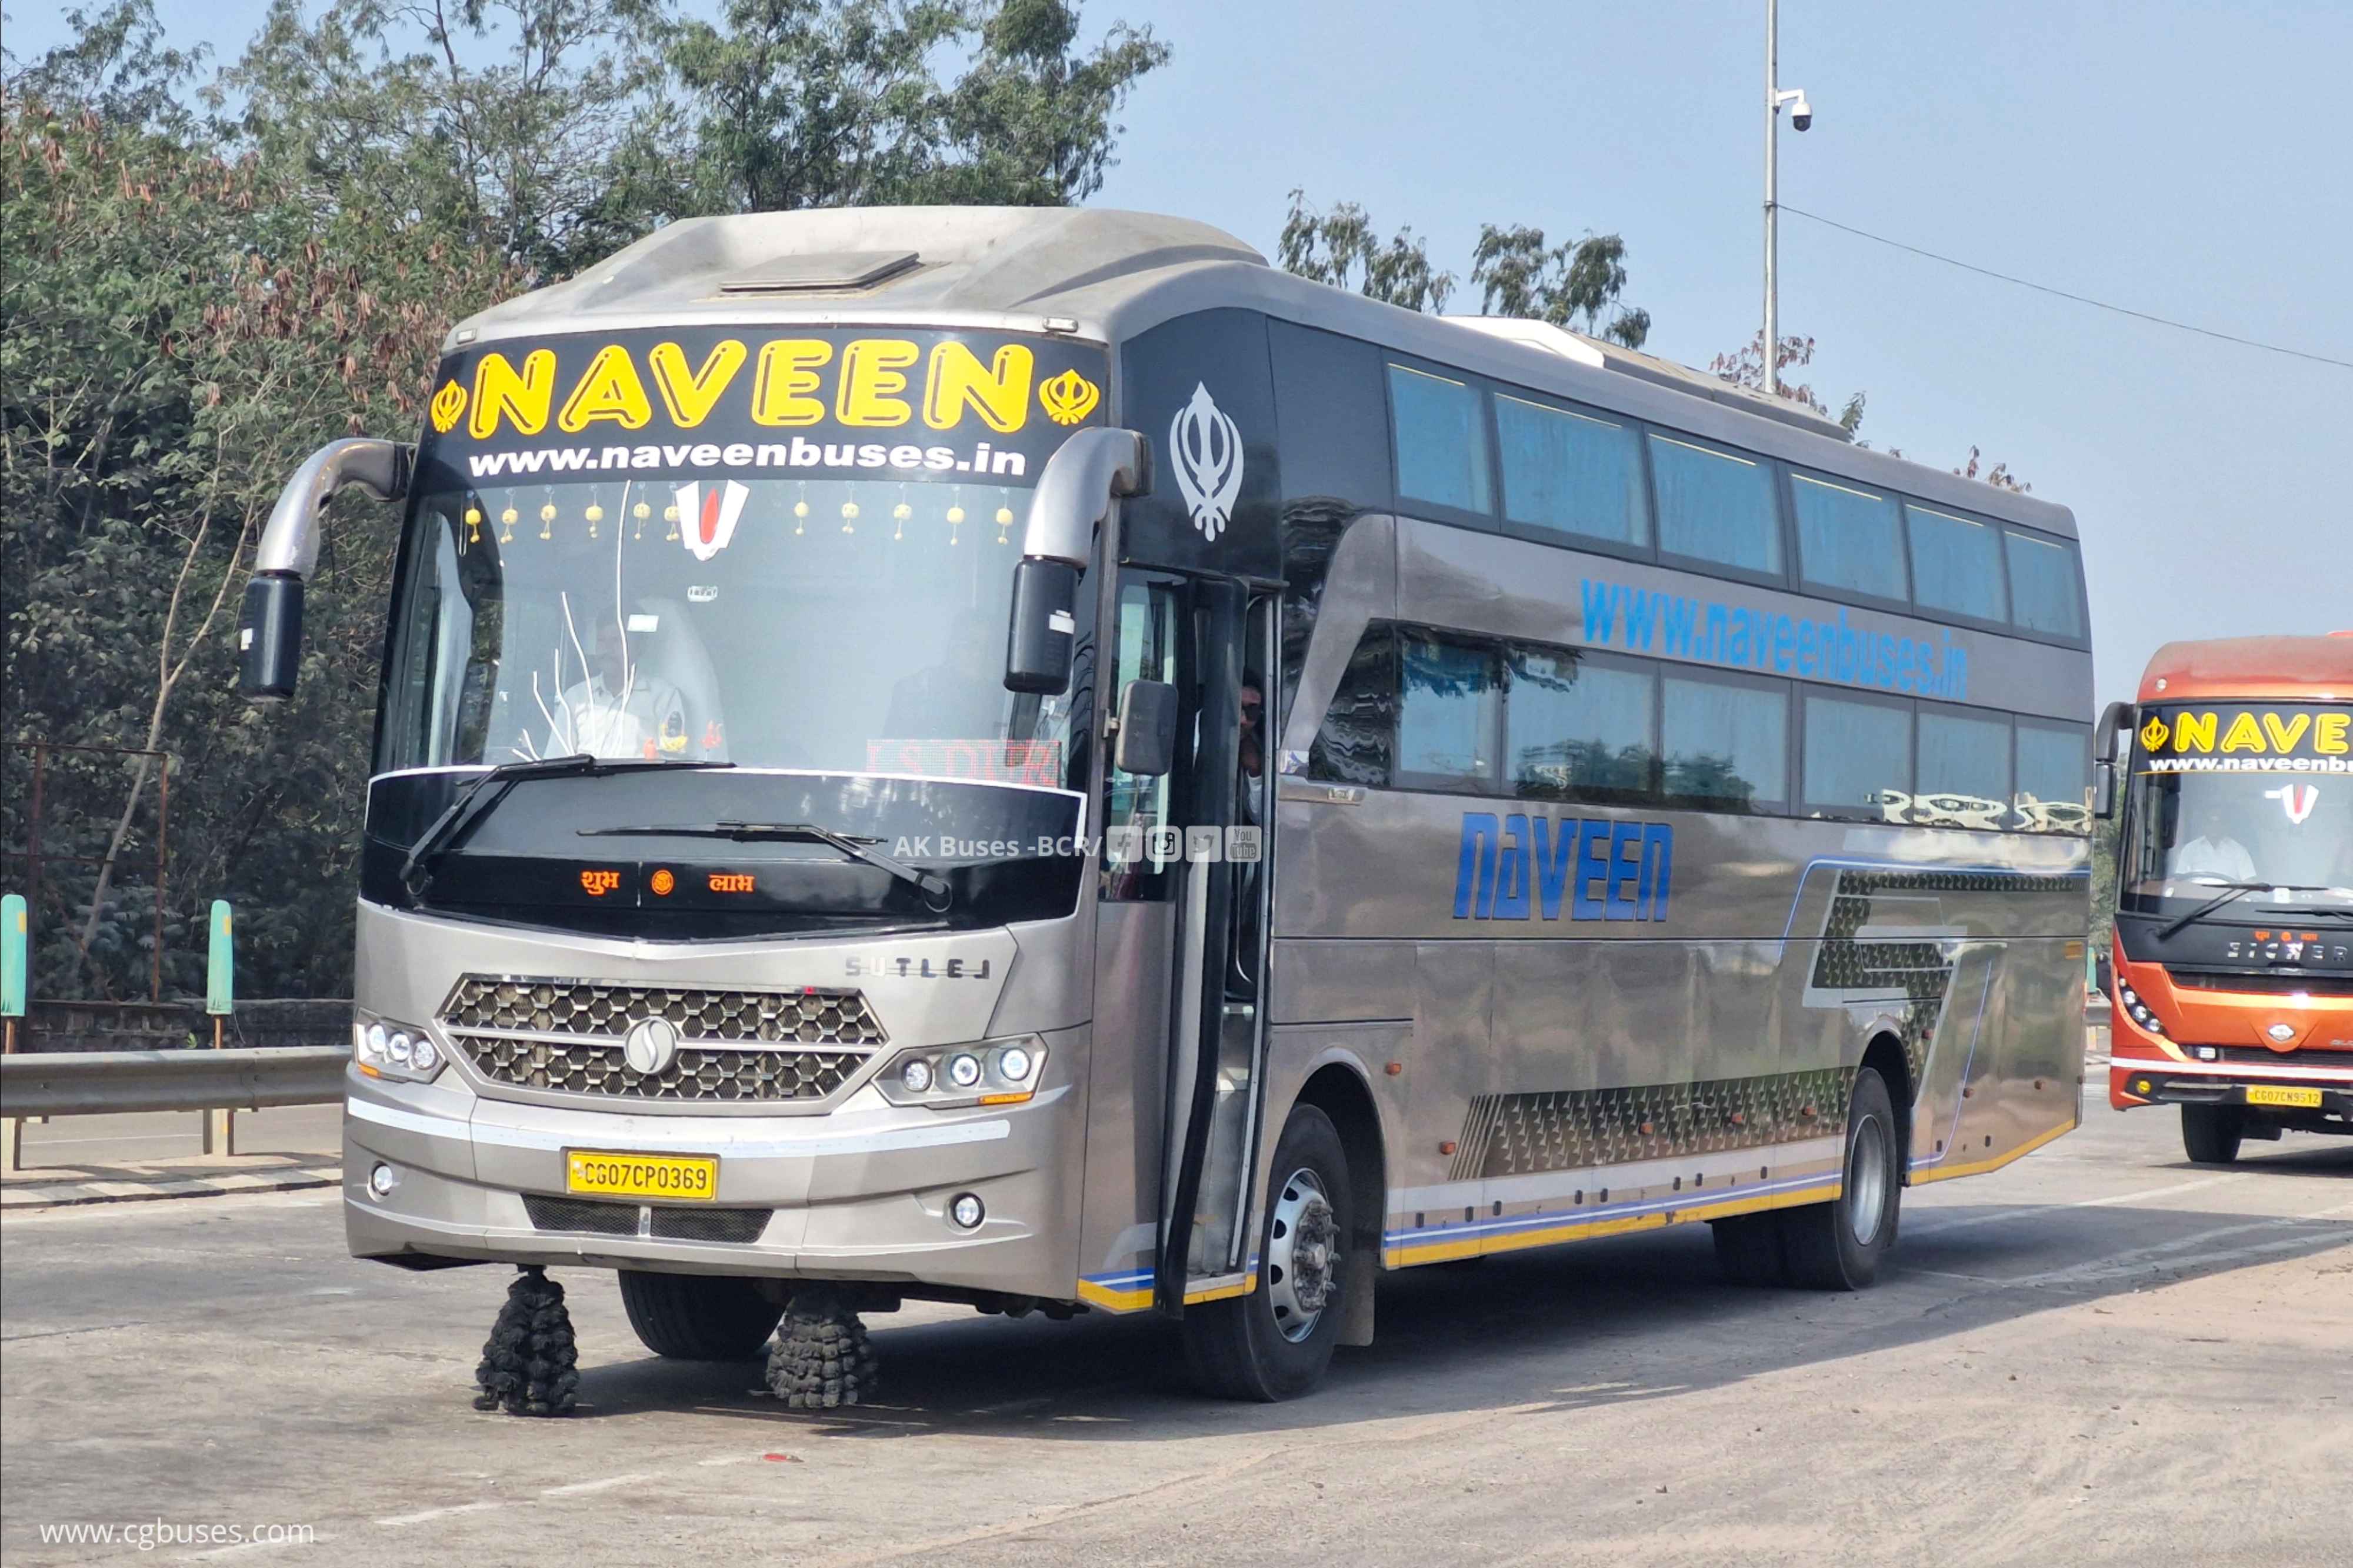 naveen travels sutlej s 1800 luxury bus